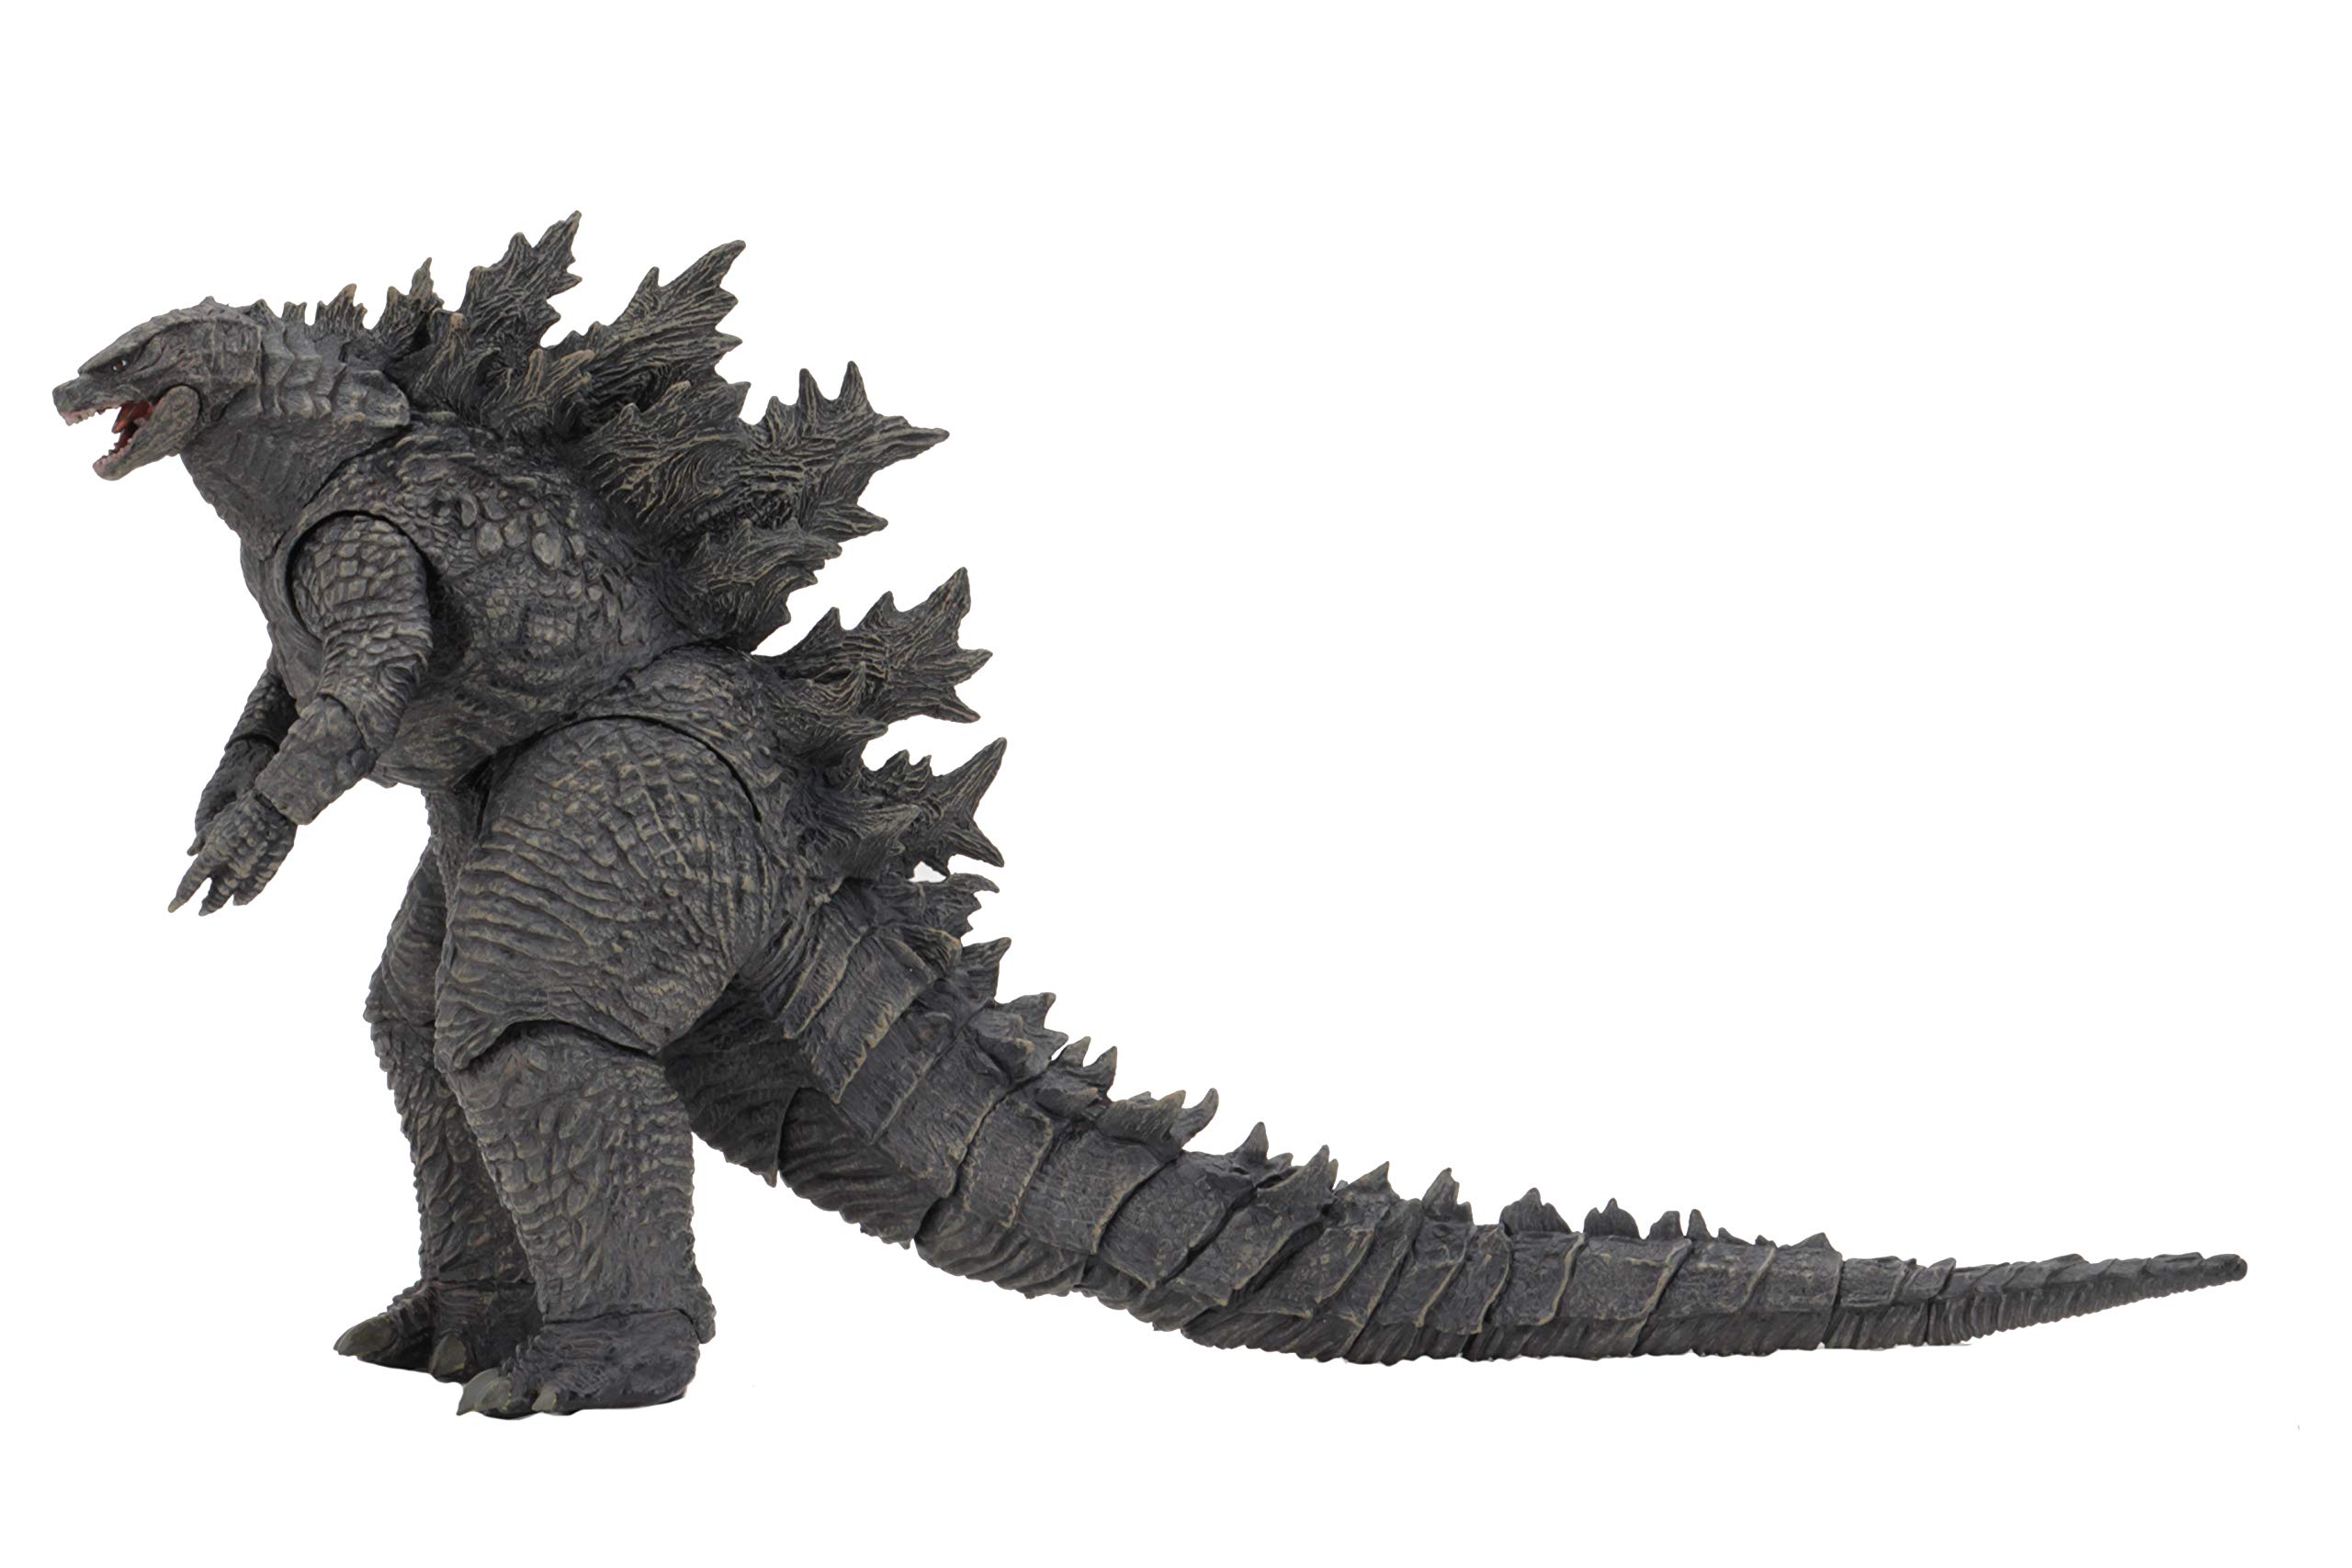 Top 21 mẫu tranh tô màu Godzilla đẹp nhất bé nào cũng mê tít